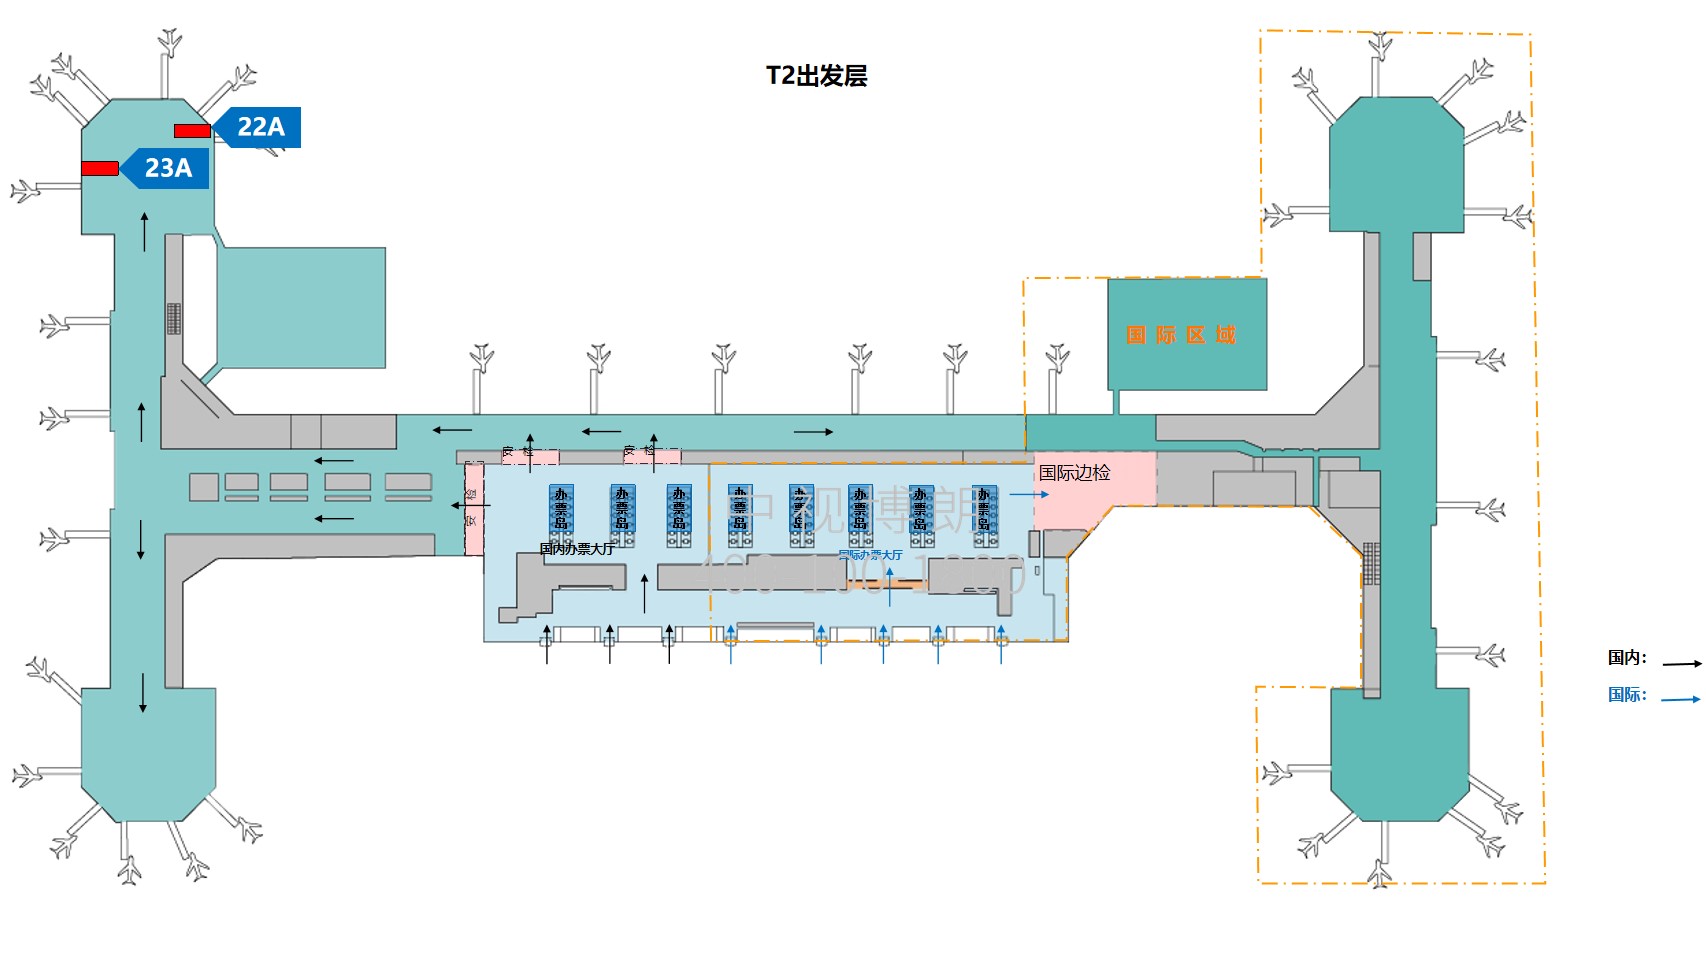 北京首都机场广告-T3C Domestic Waiting Area Wall Light Box Set位置图